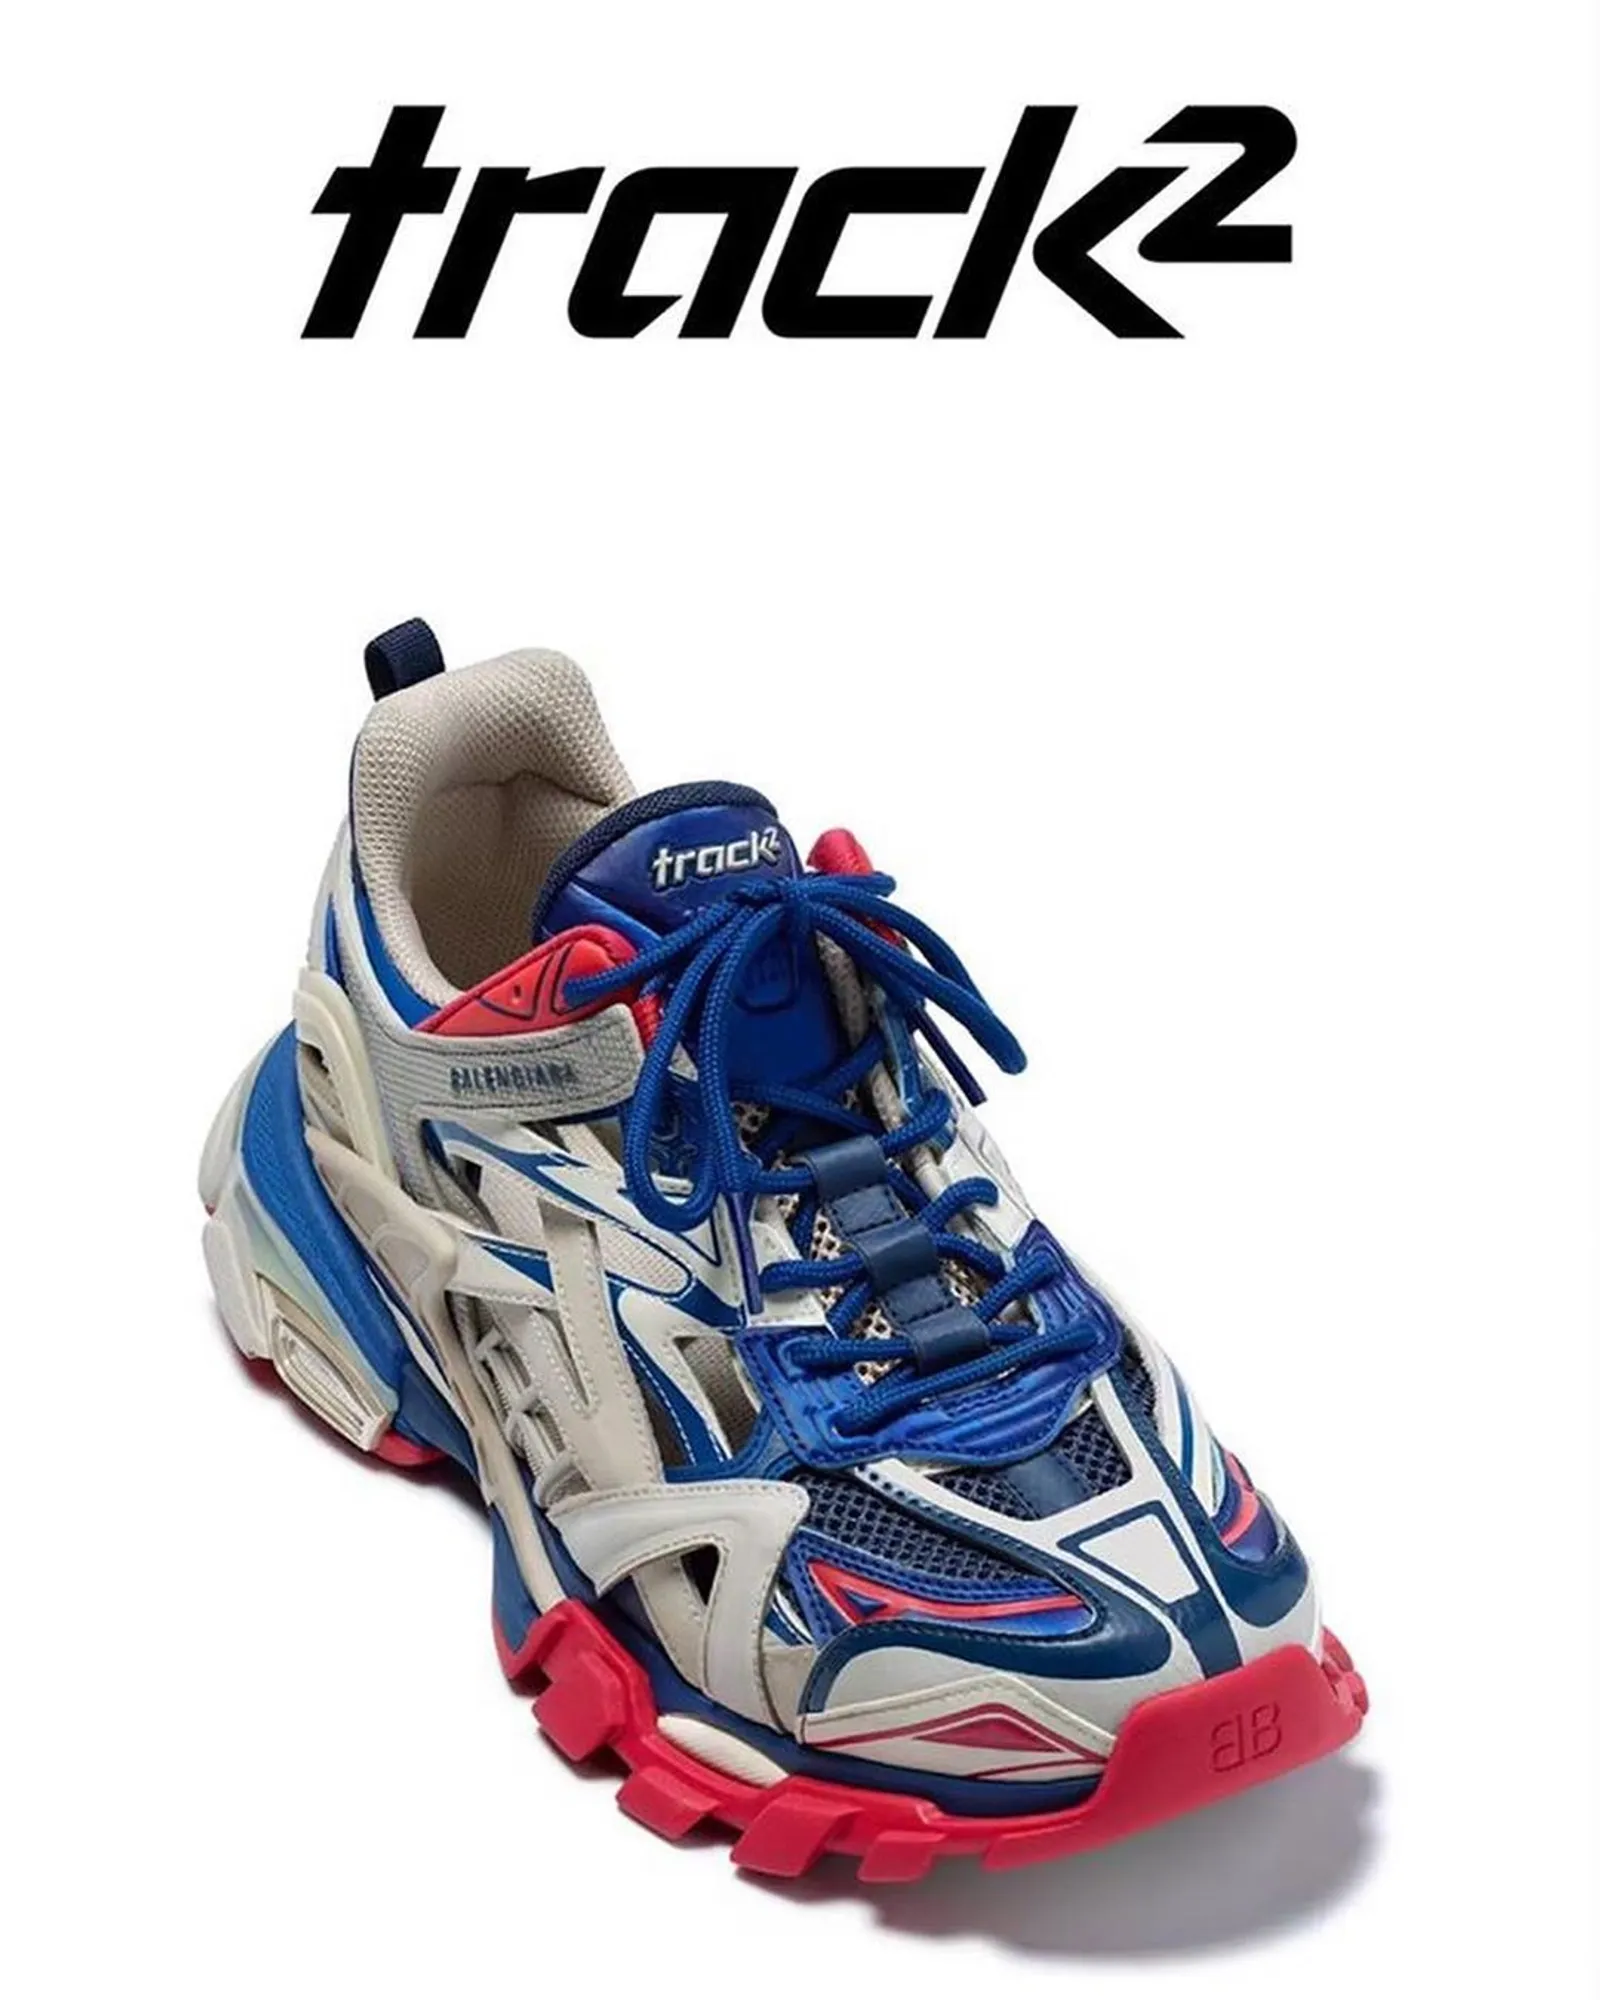 Detail Keren dari Sepatu Trainer Balenciaga Track.2!